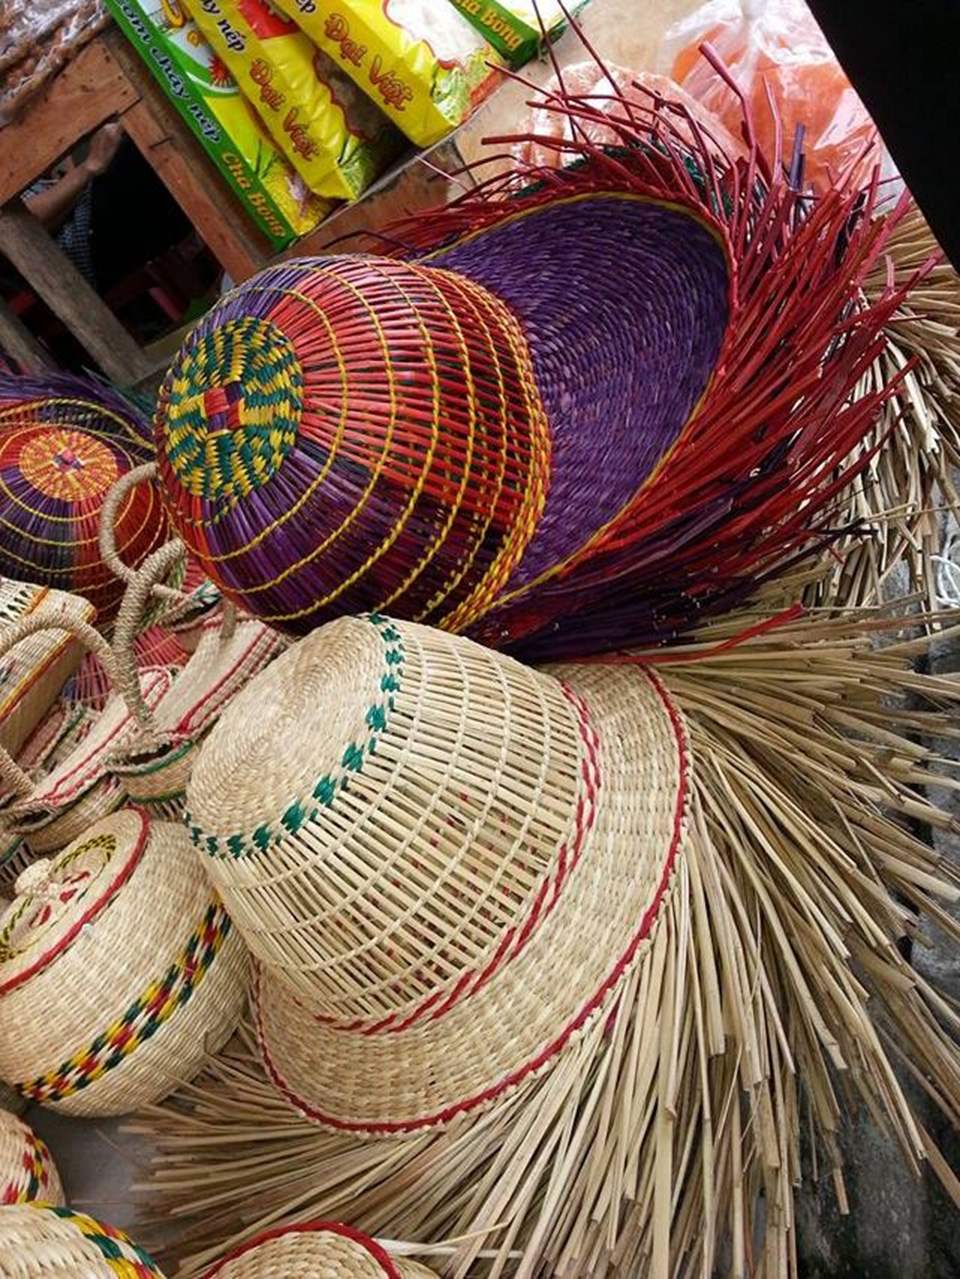 Làng nghề cói Kim Sơn - Sắt son gắn bó với nghề truyền thống hơn 200 năm 2